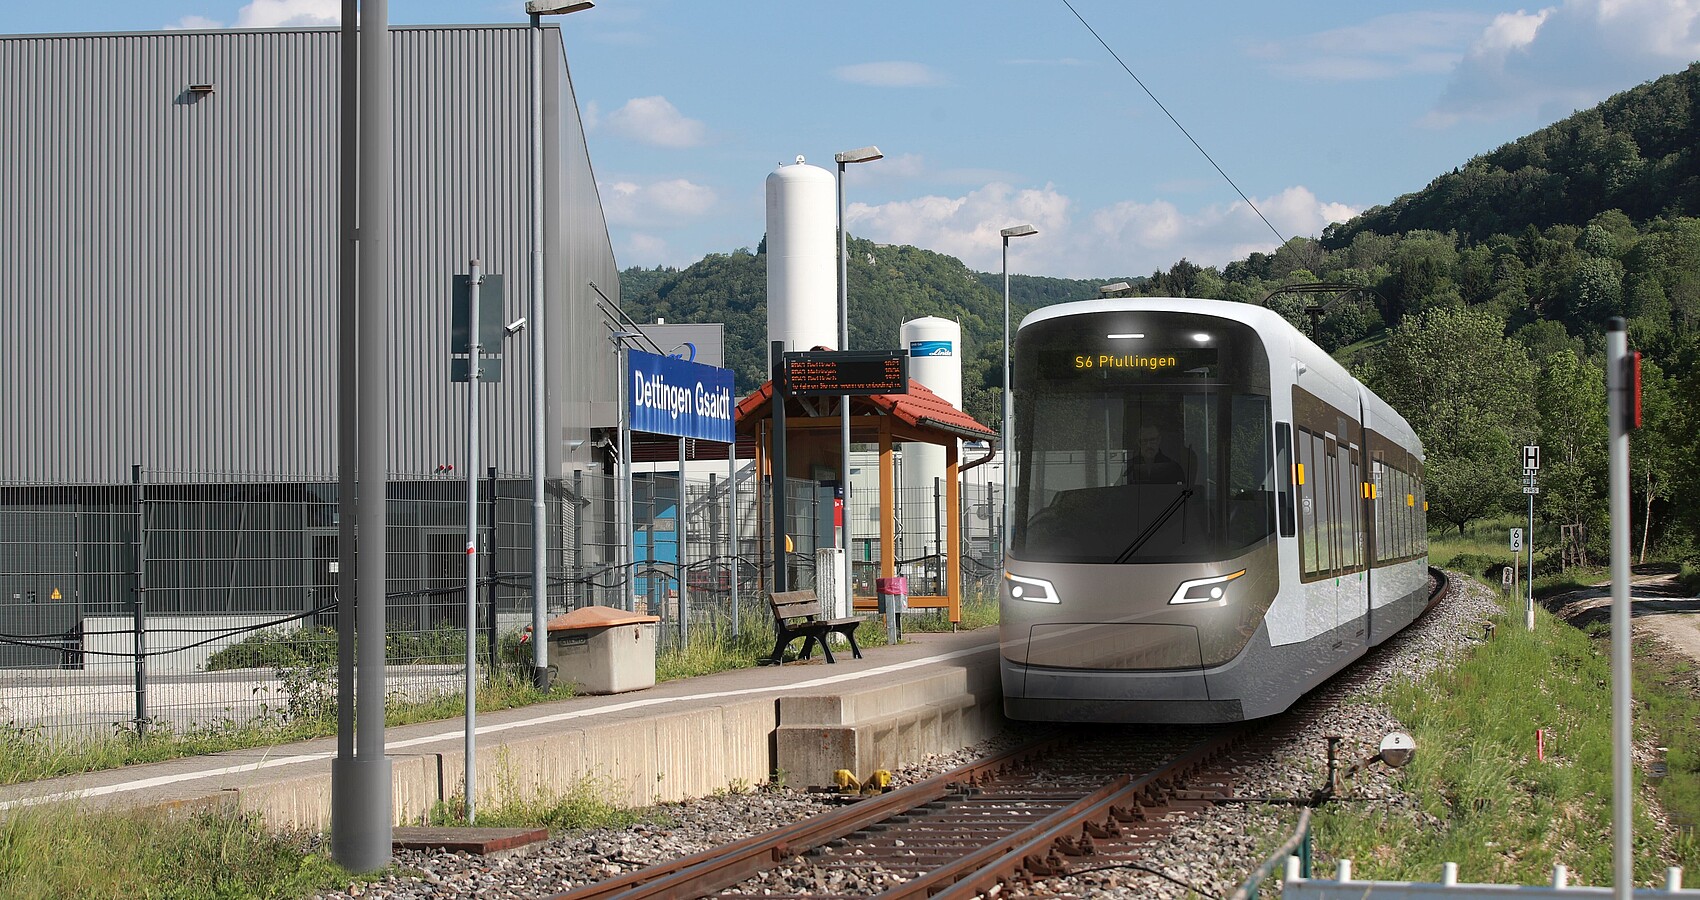 Symbolbild einer Tram-Train auf der Ermstalbahn im Bahnhof Dettingen-Gsaidt